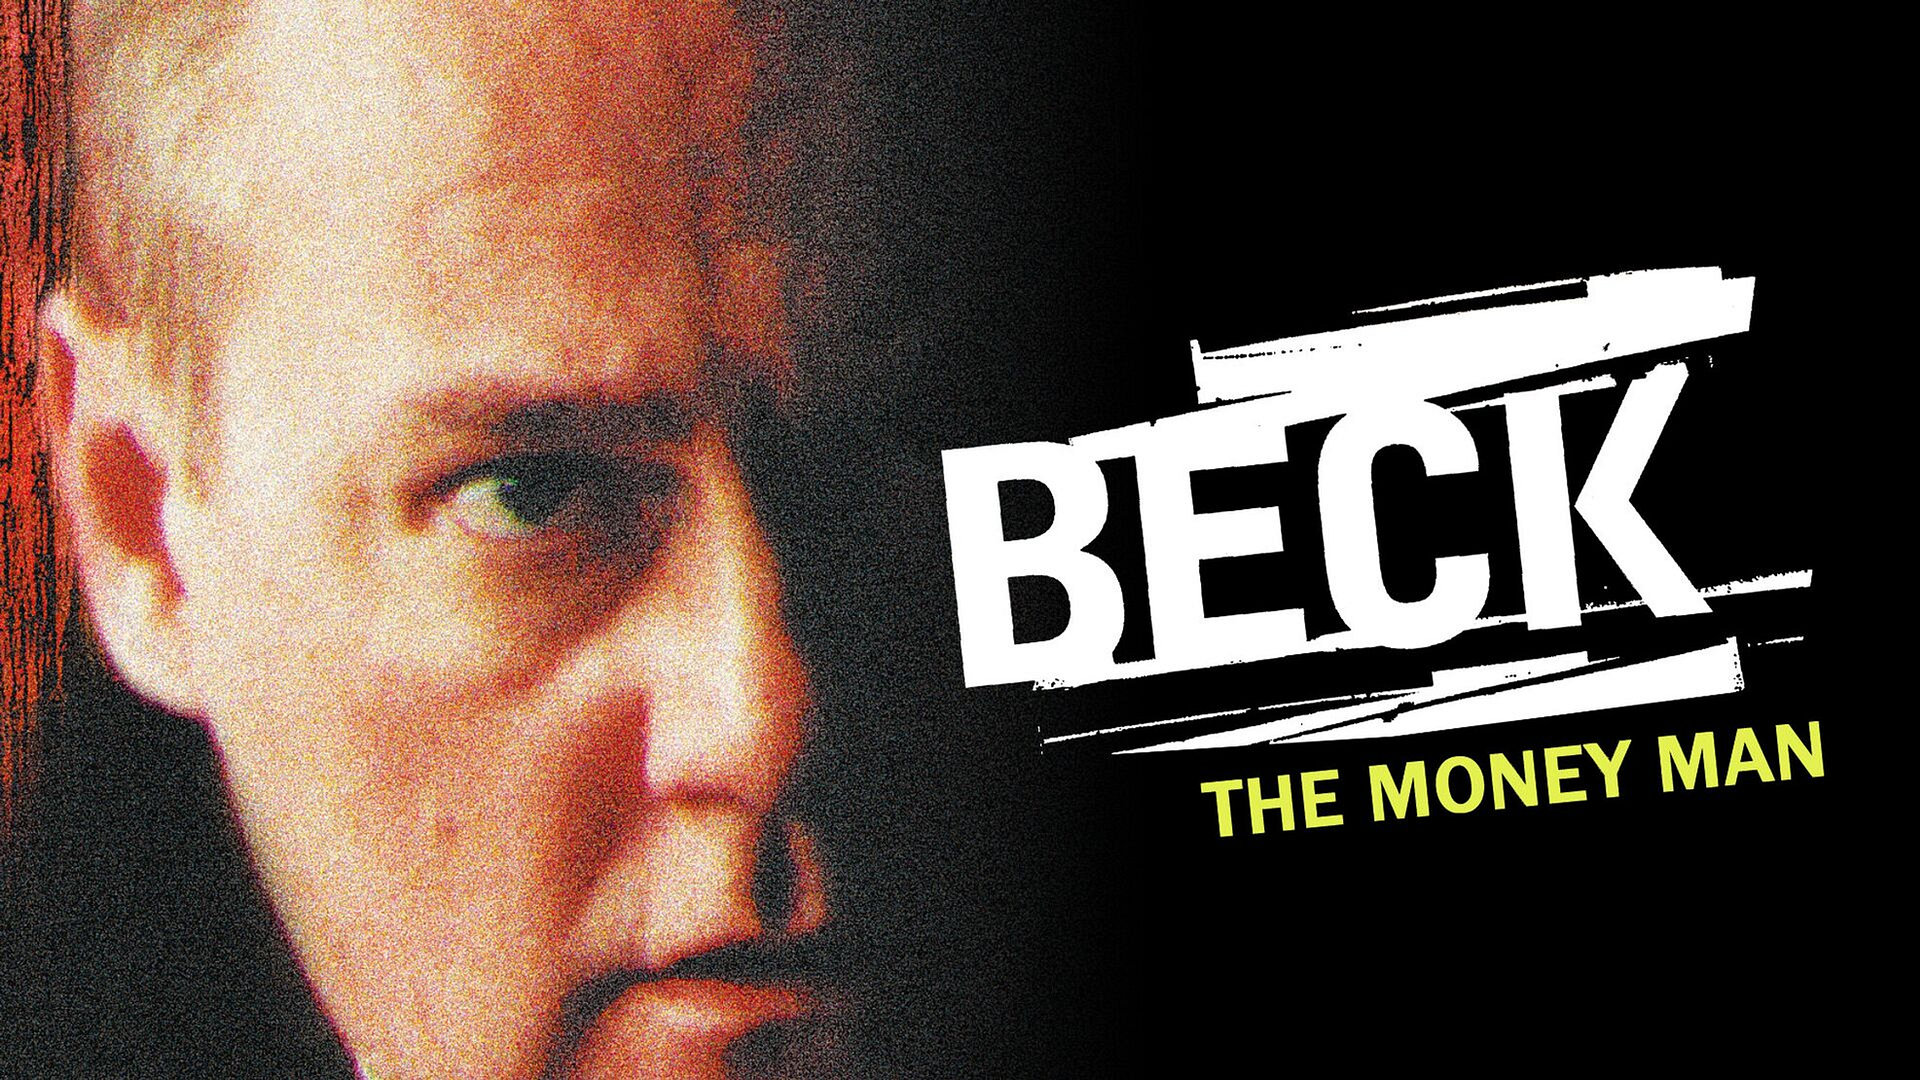 Beck - The Money Man (7)